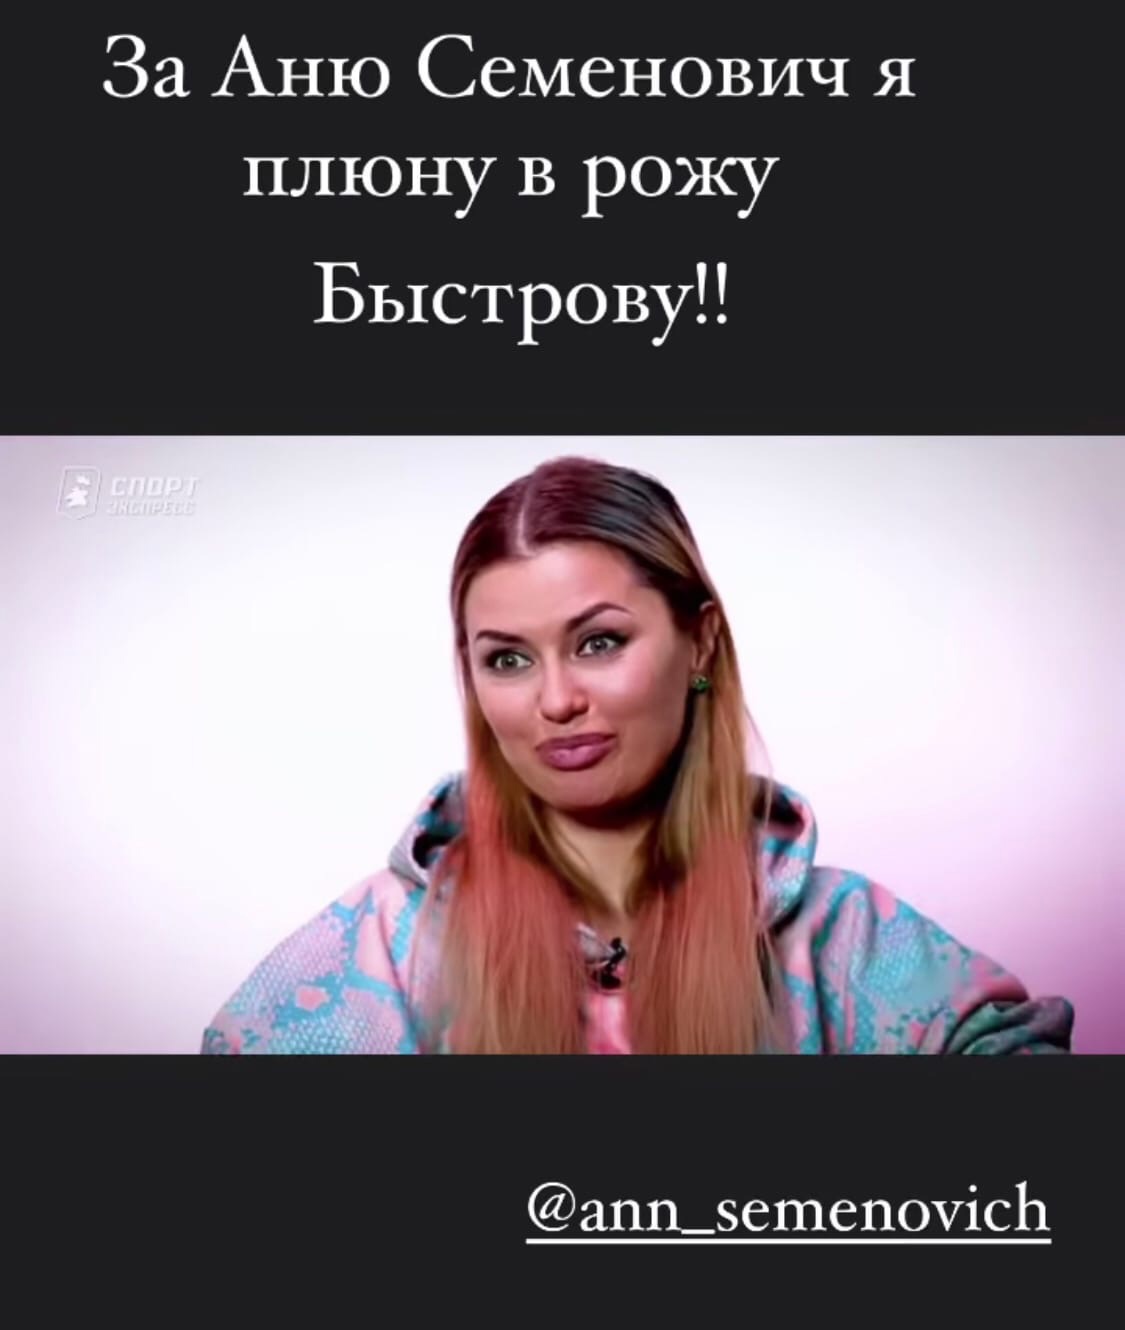 Виктория Боня вступилась за Анну Семенович

